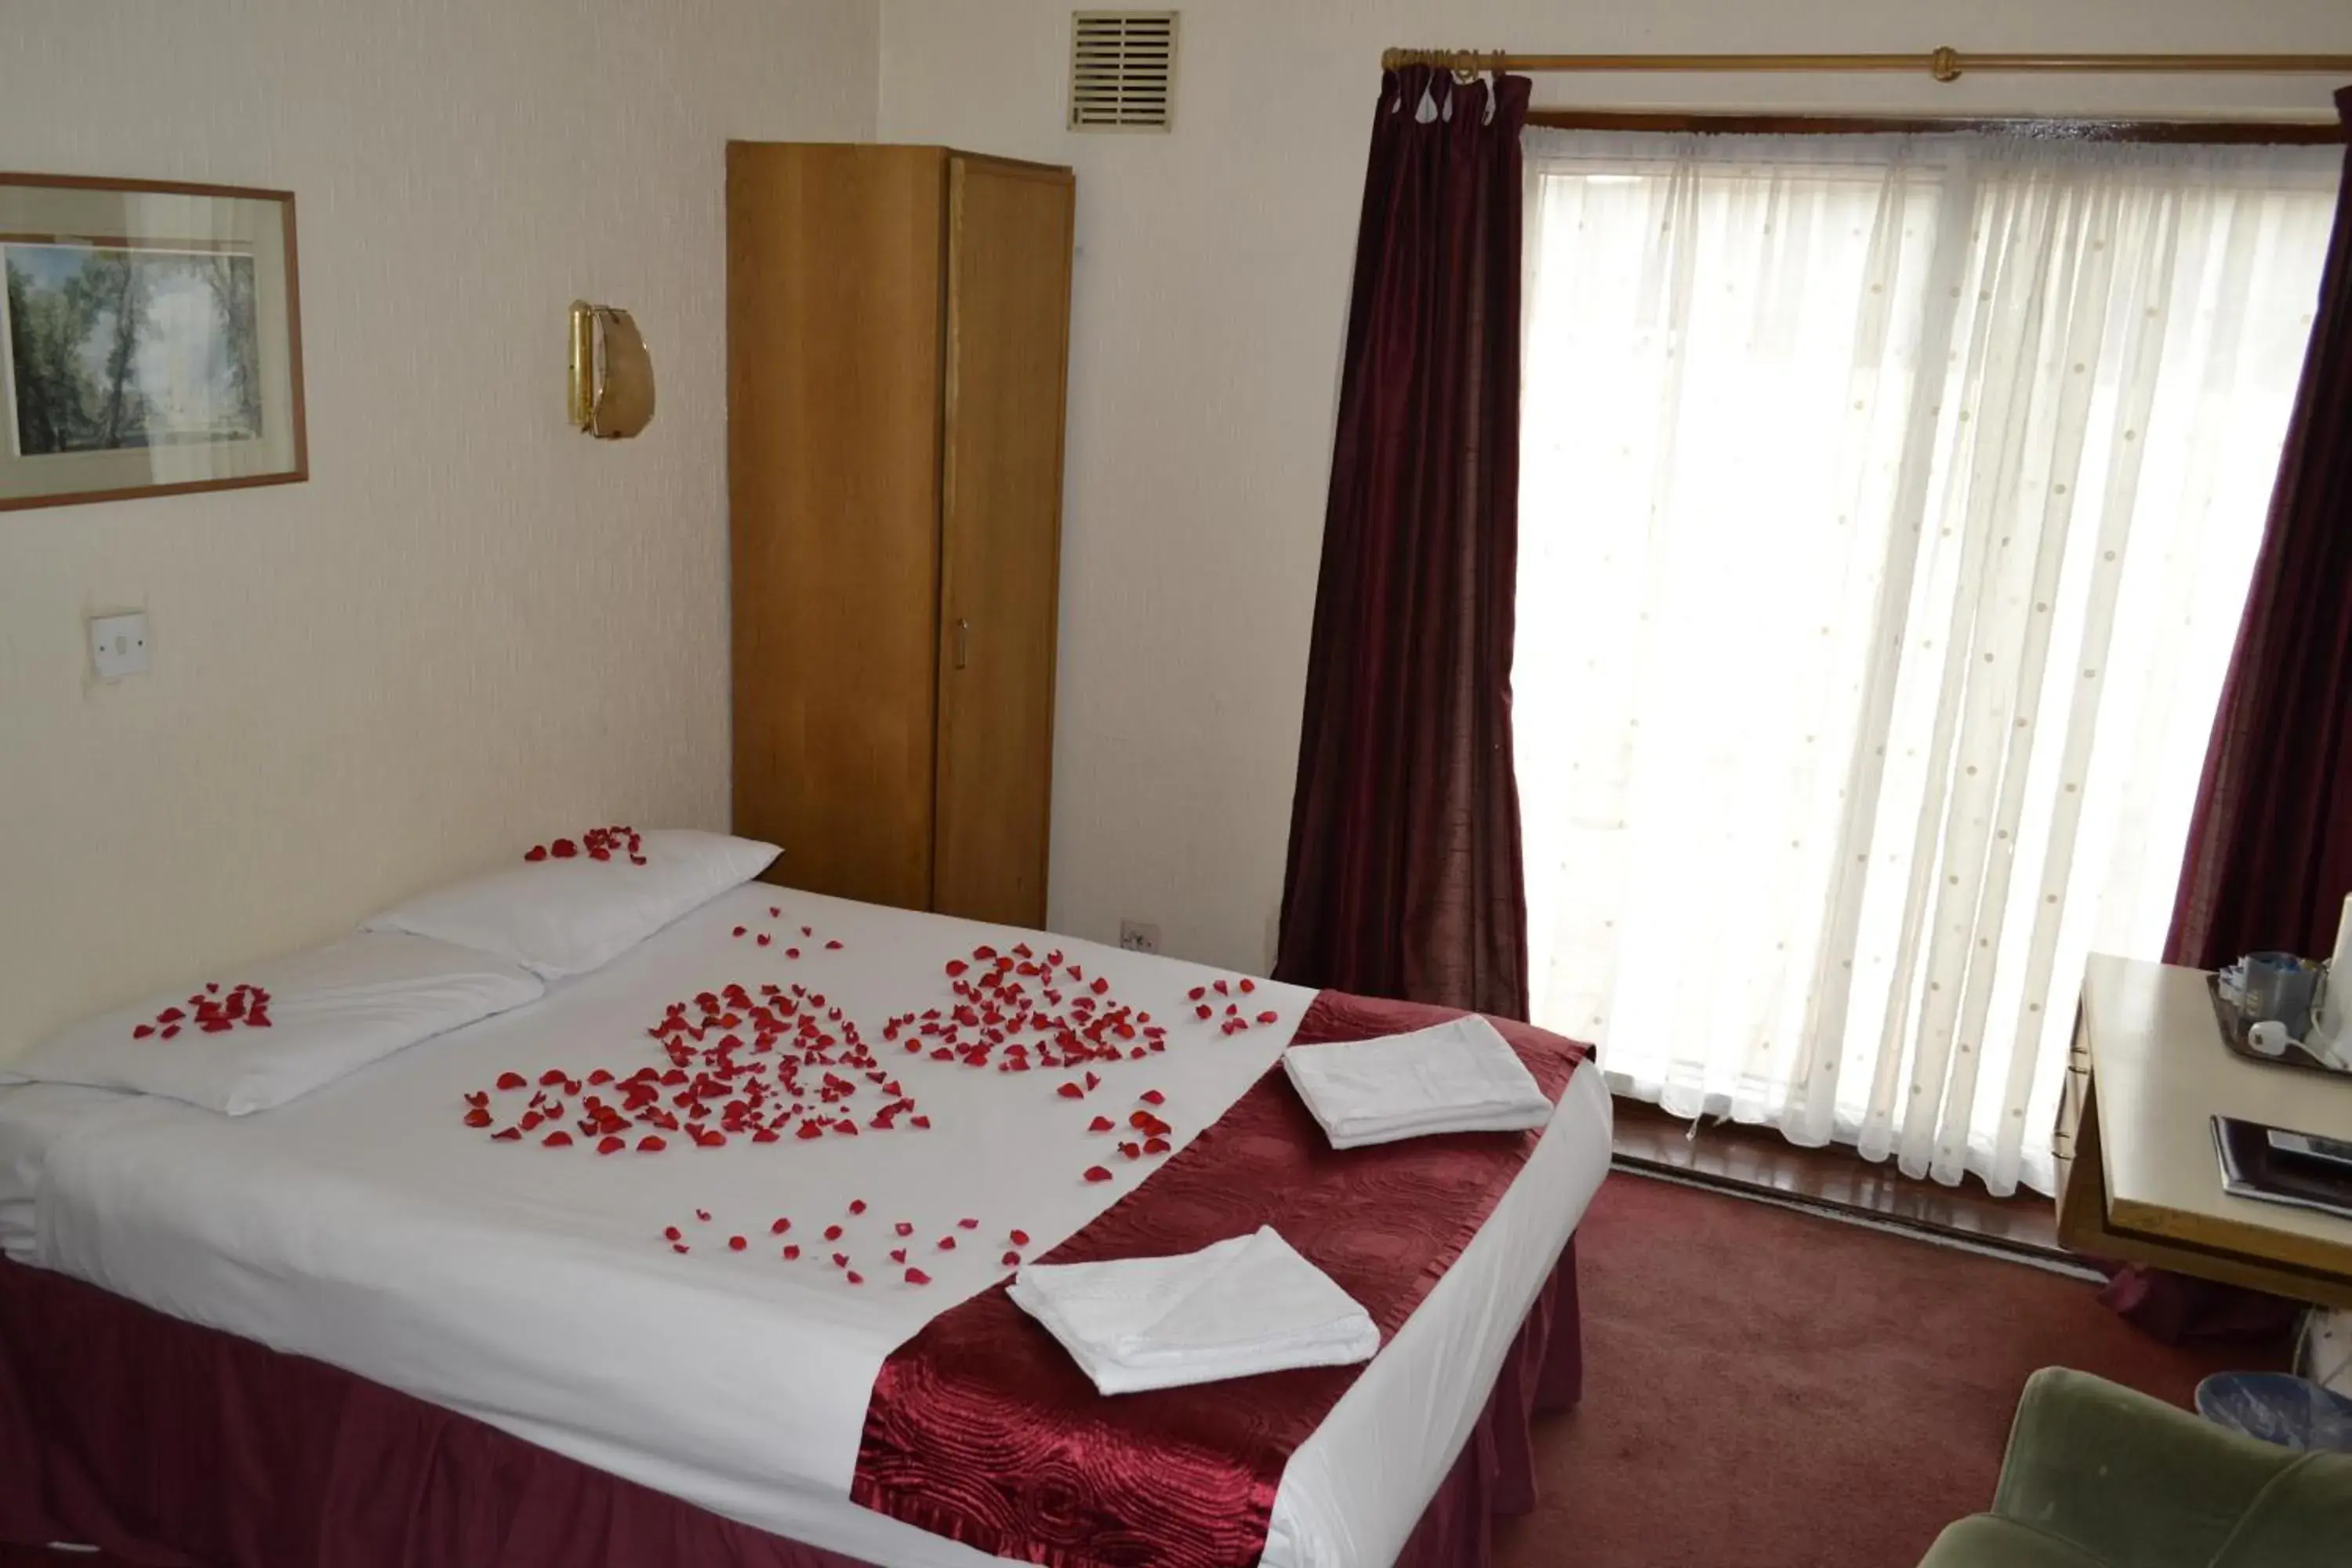 Bedroom, Bed in Cranbrook Hotel